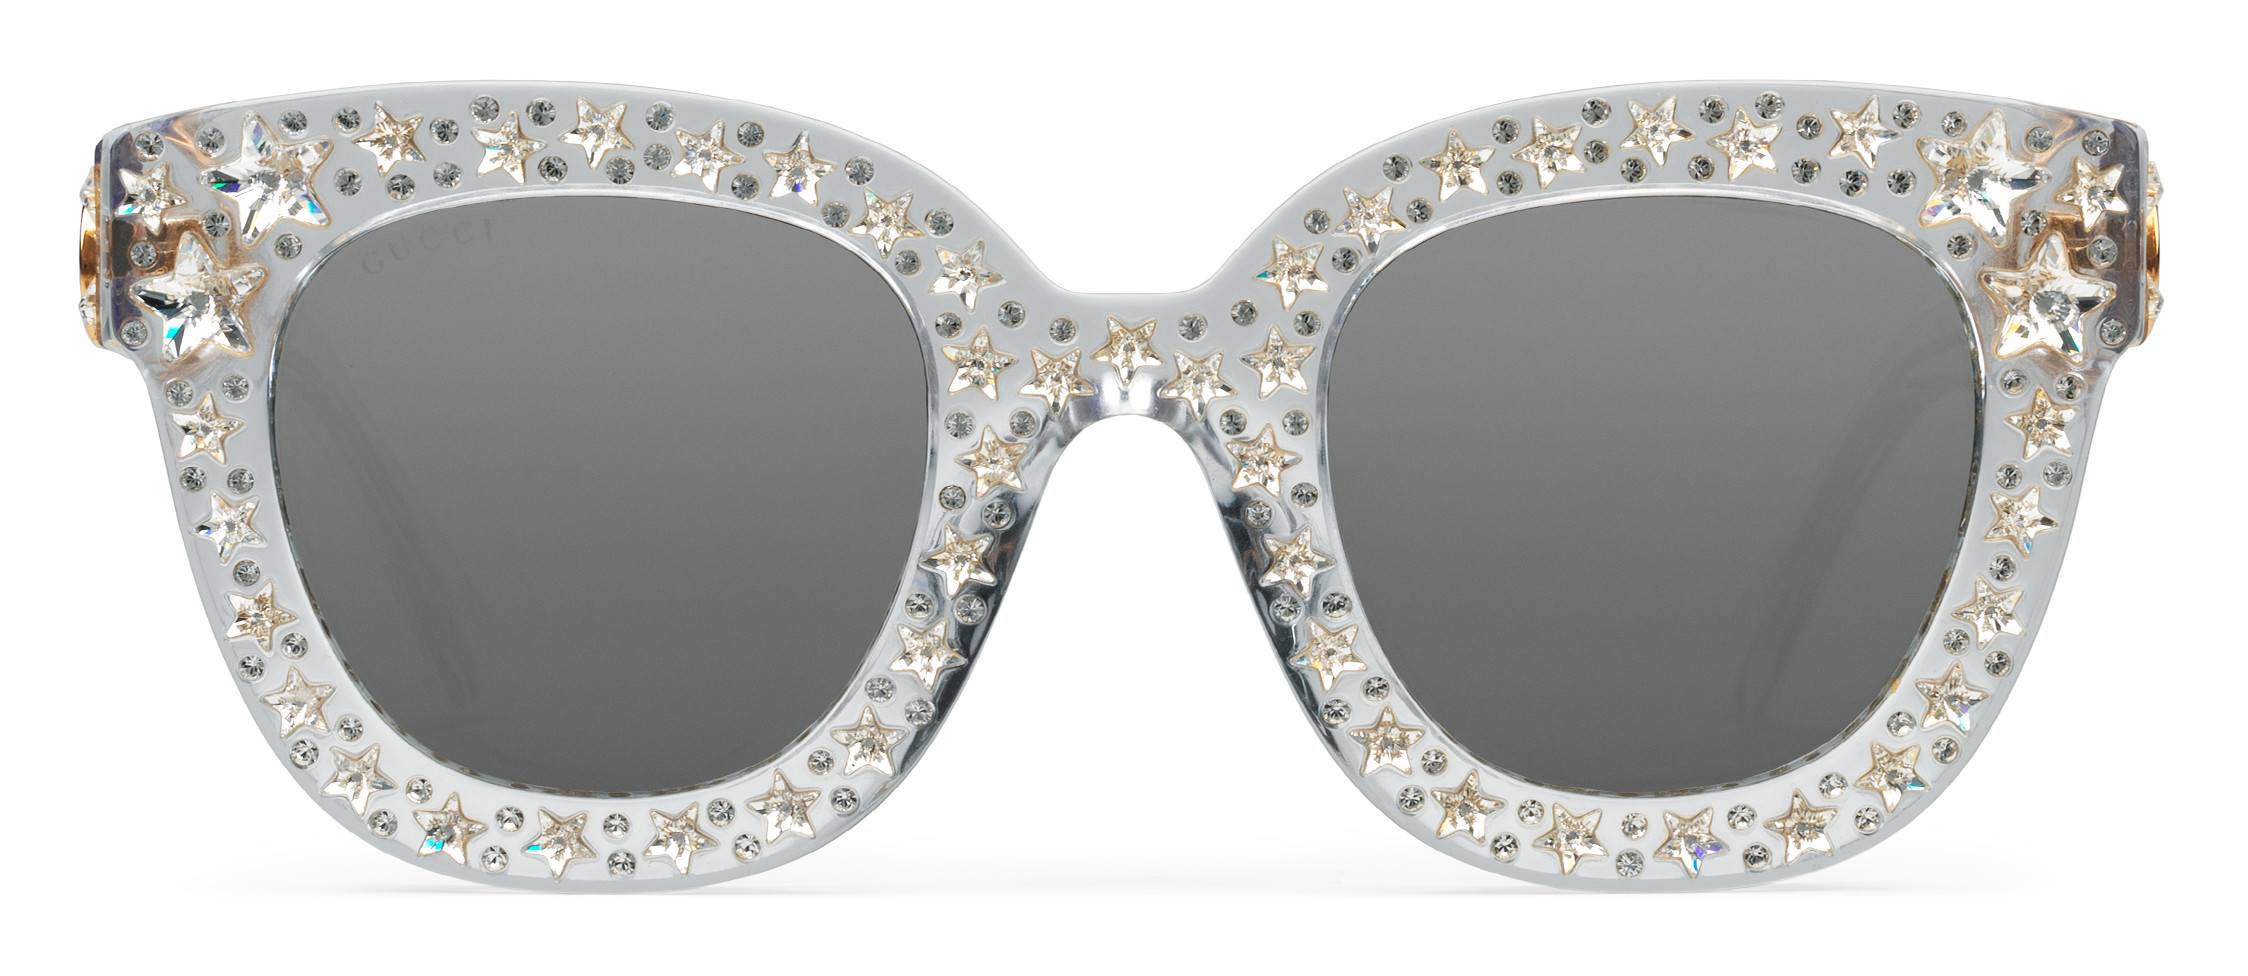 gucci black sunglasses with stars